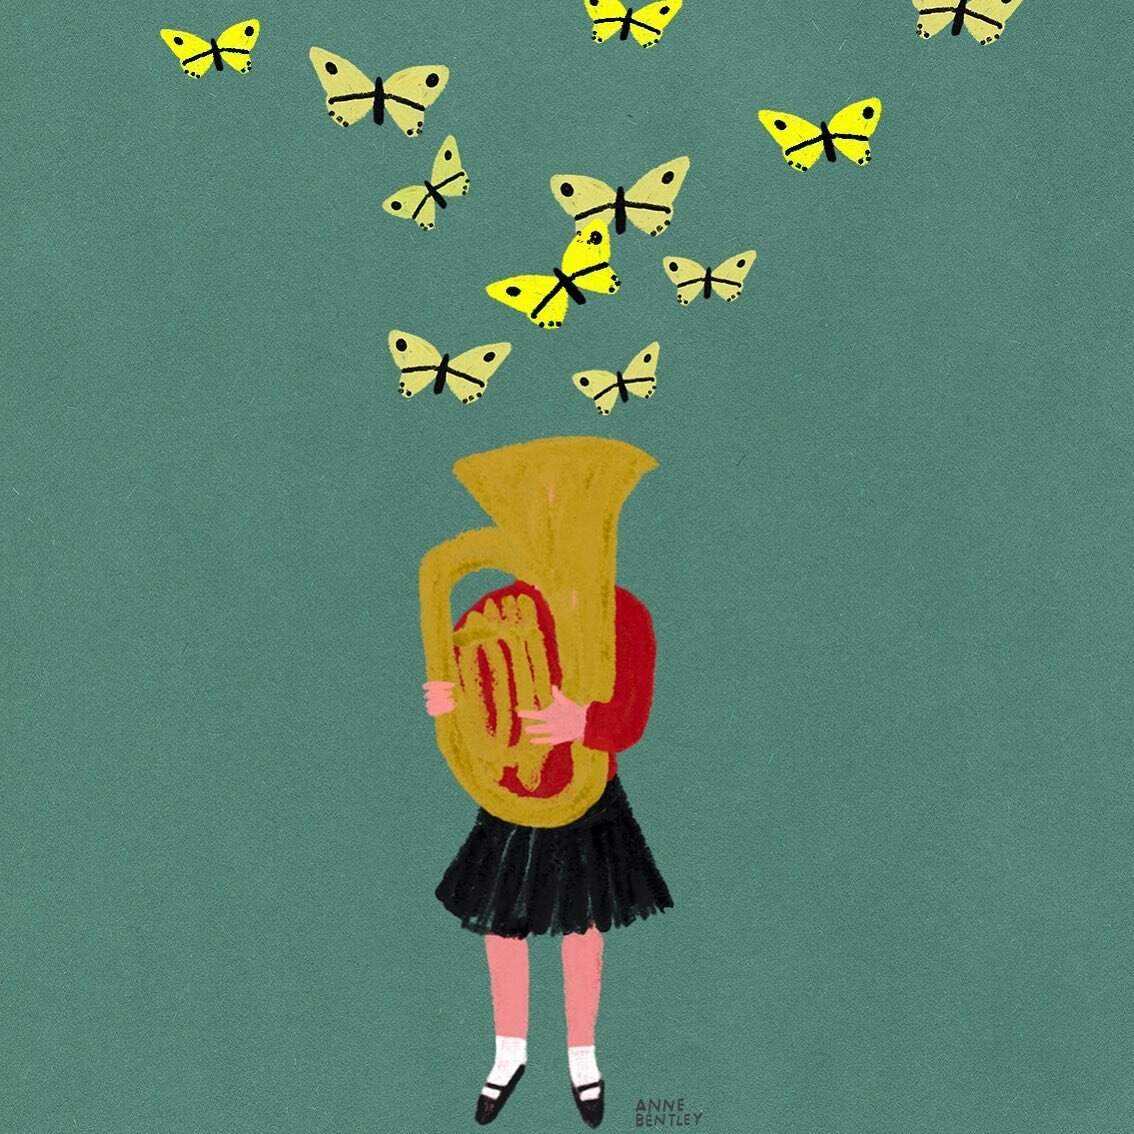 Oom-pah pah flutter-flutter 

#picturebookillustration #kidsandinstruments